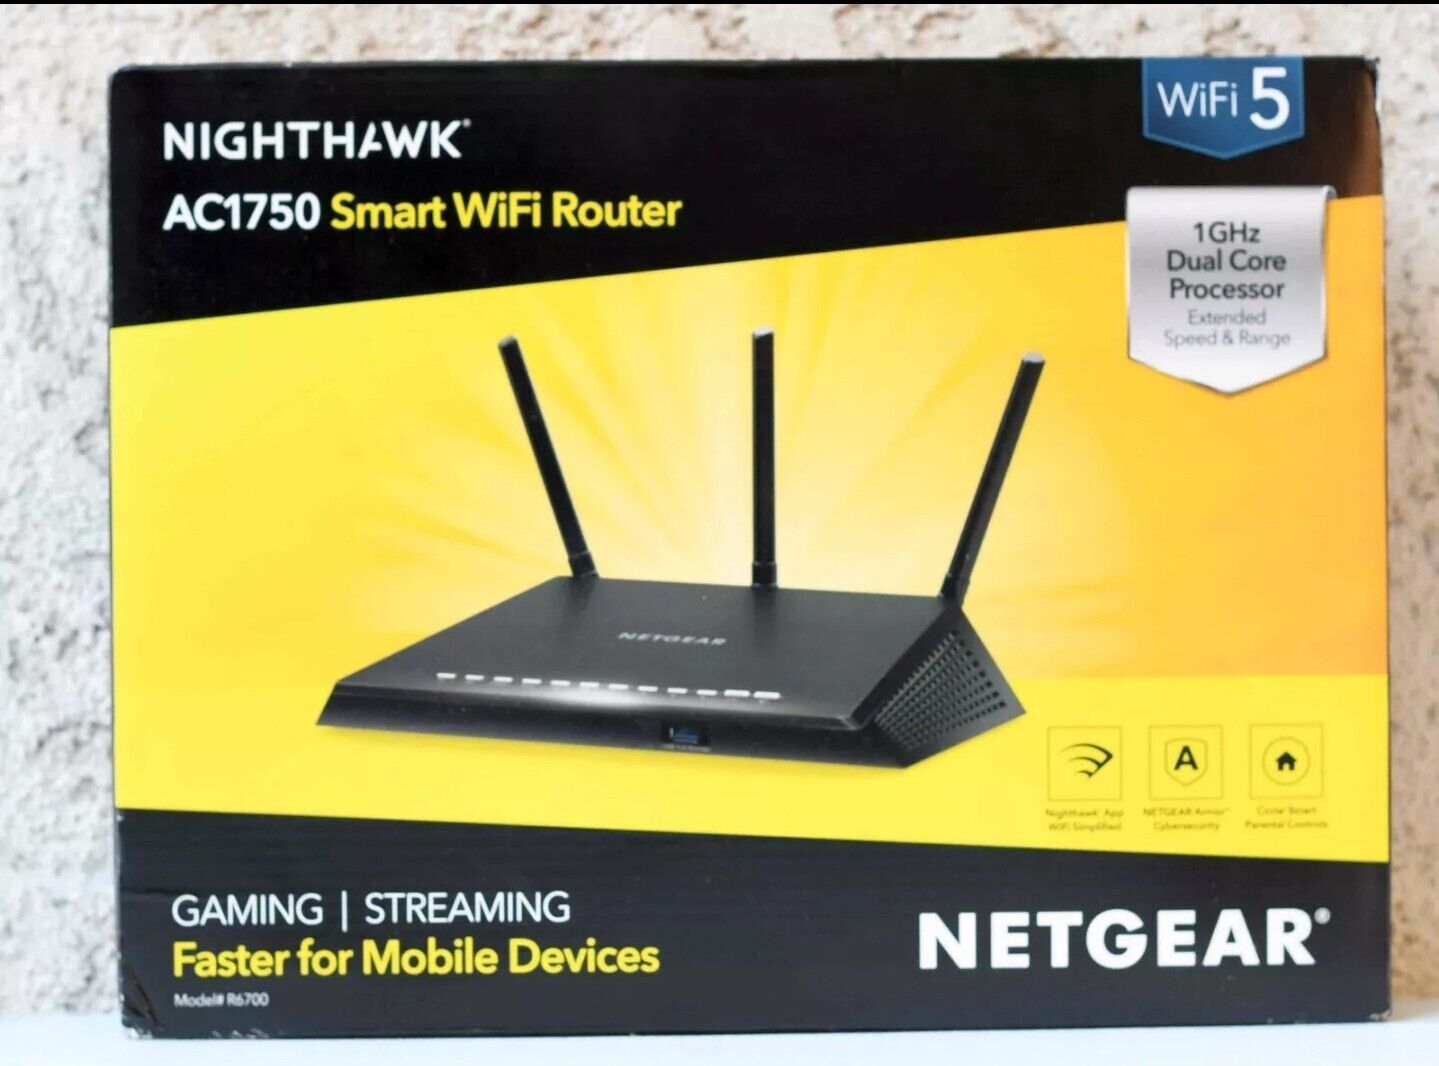 NETGEAR R7600 Nighthawk AC1750 Smart WiFi Router - R6700-100NAS